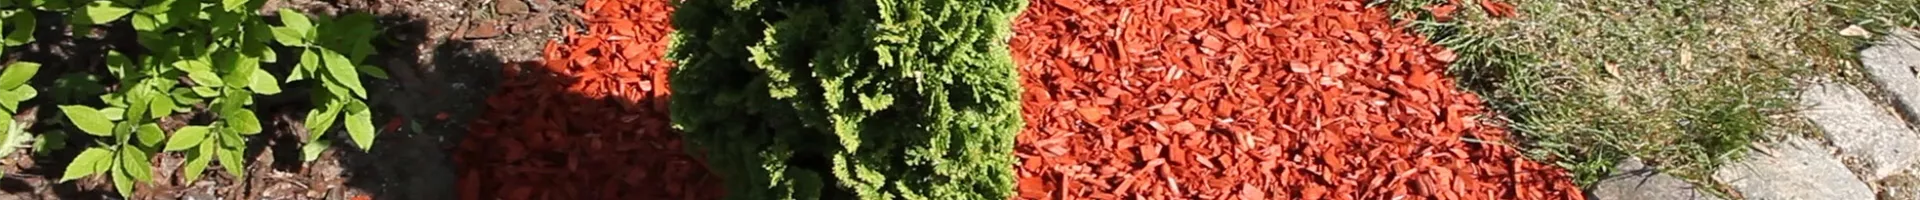 Mulch - Einsatz im Garten (thumbnail).jpg